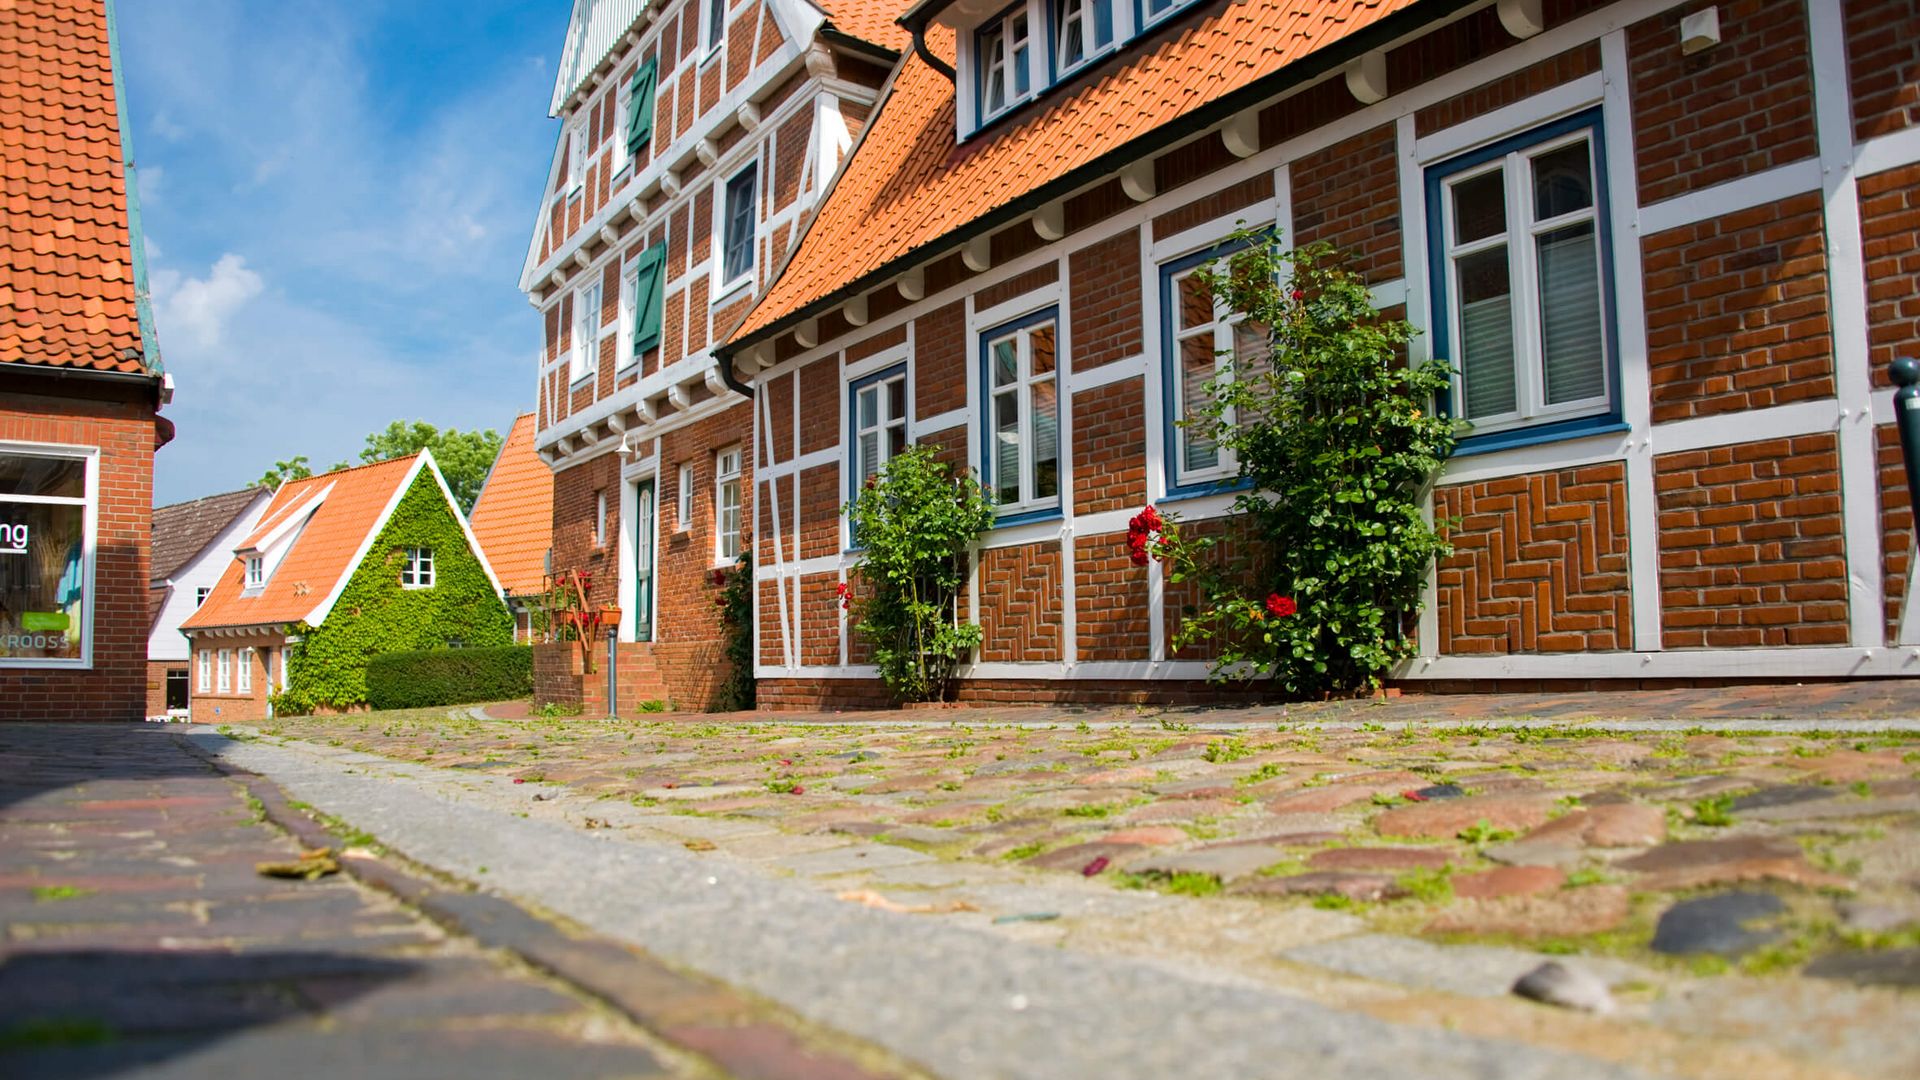 Blick auf ein Fachwerkhaus in einer Gasse der Altstadt Otterndorfs